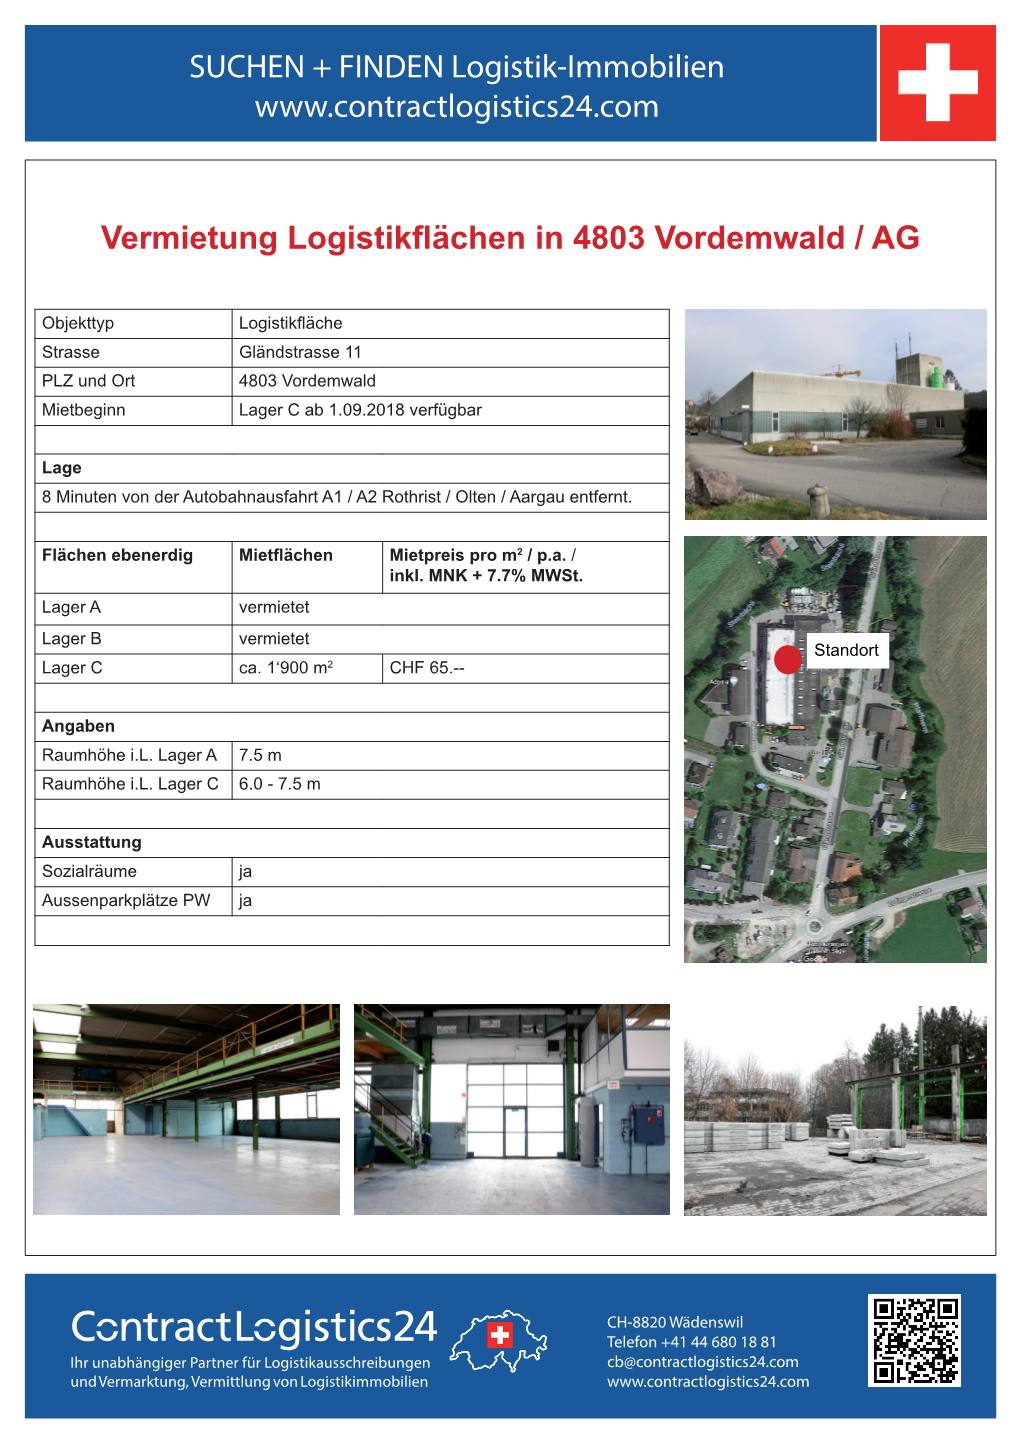 Vermietung Logistikflächen in 4803 Vordemwald / AG SUCHEN +